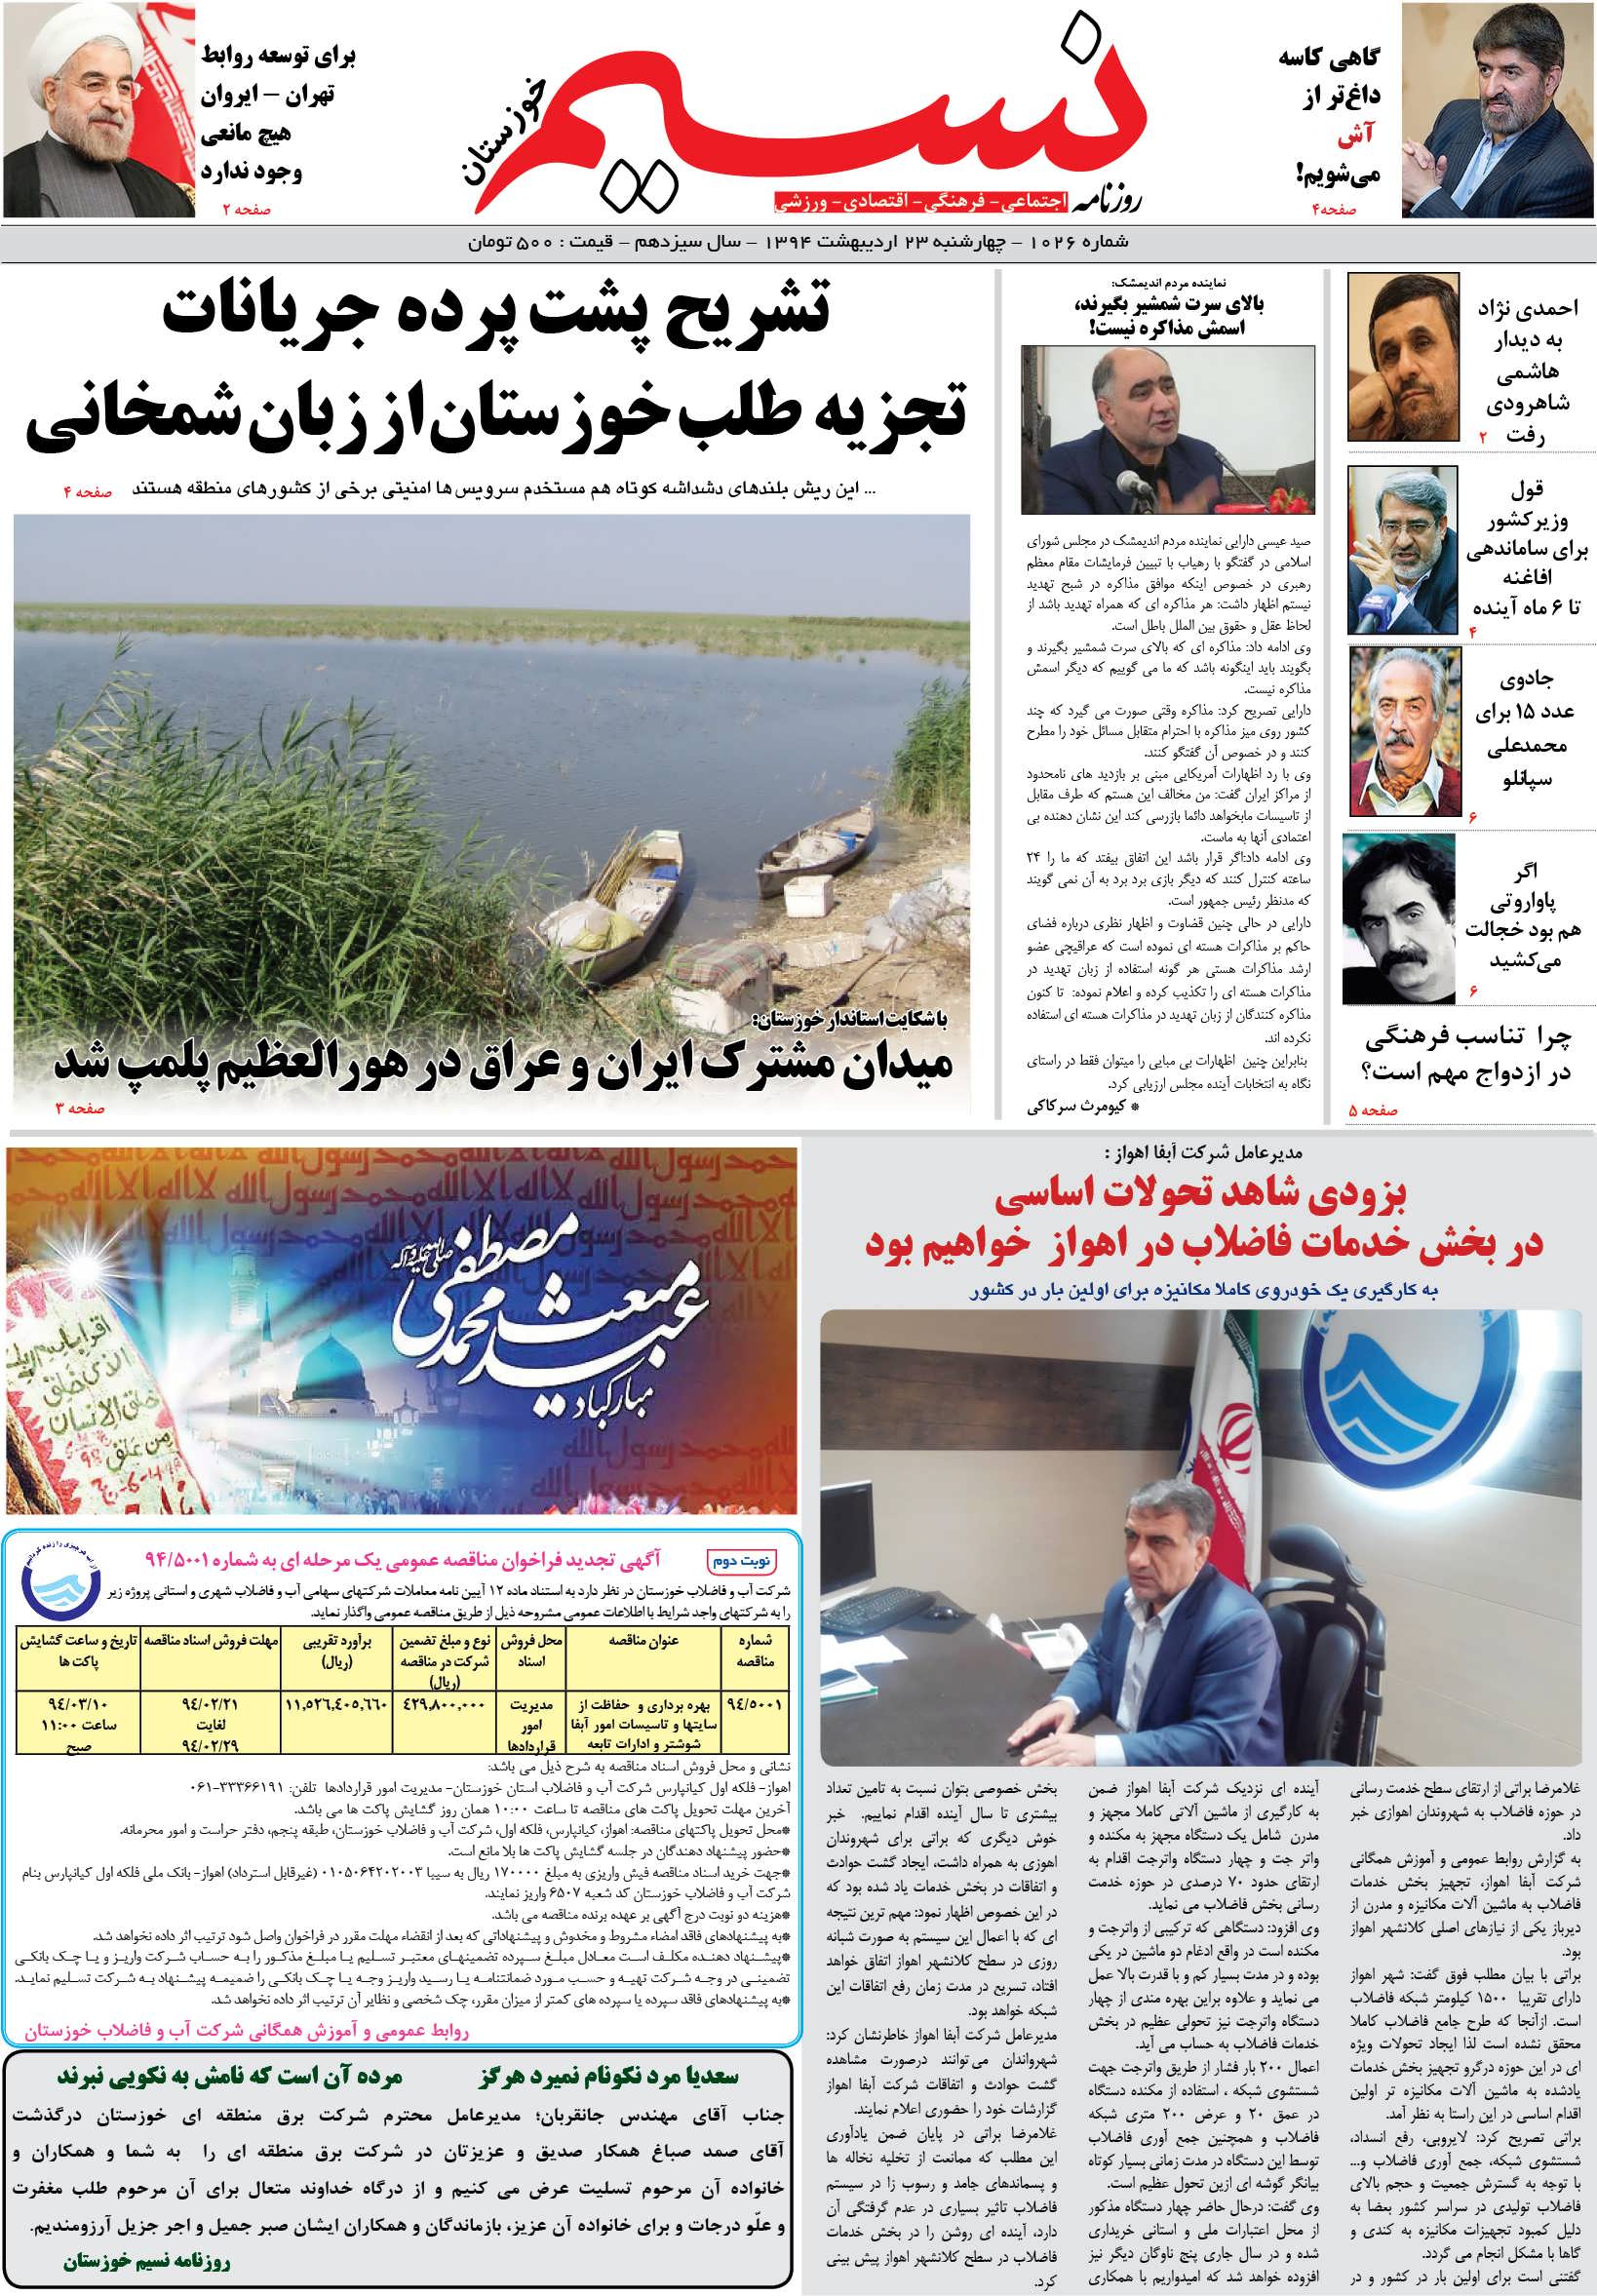 صفحه اصلی روزنامه نسیم شماره 1026